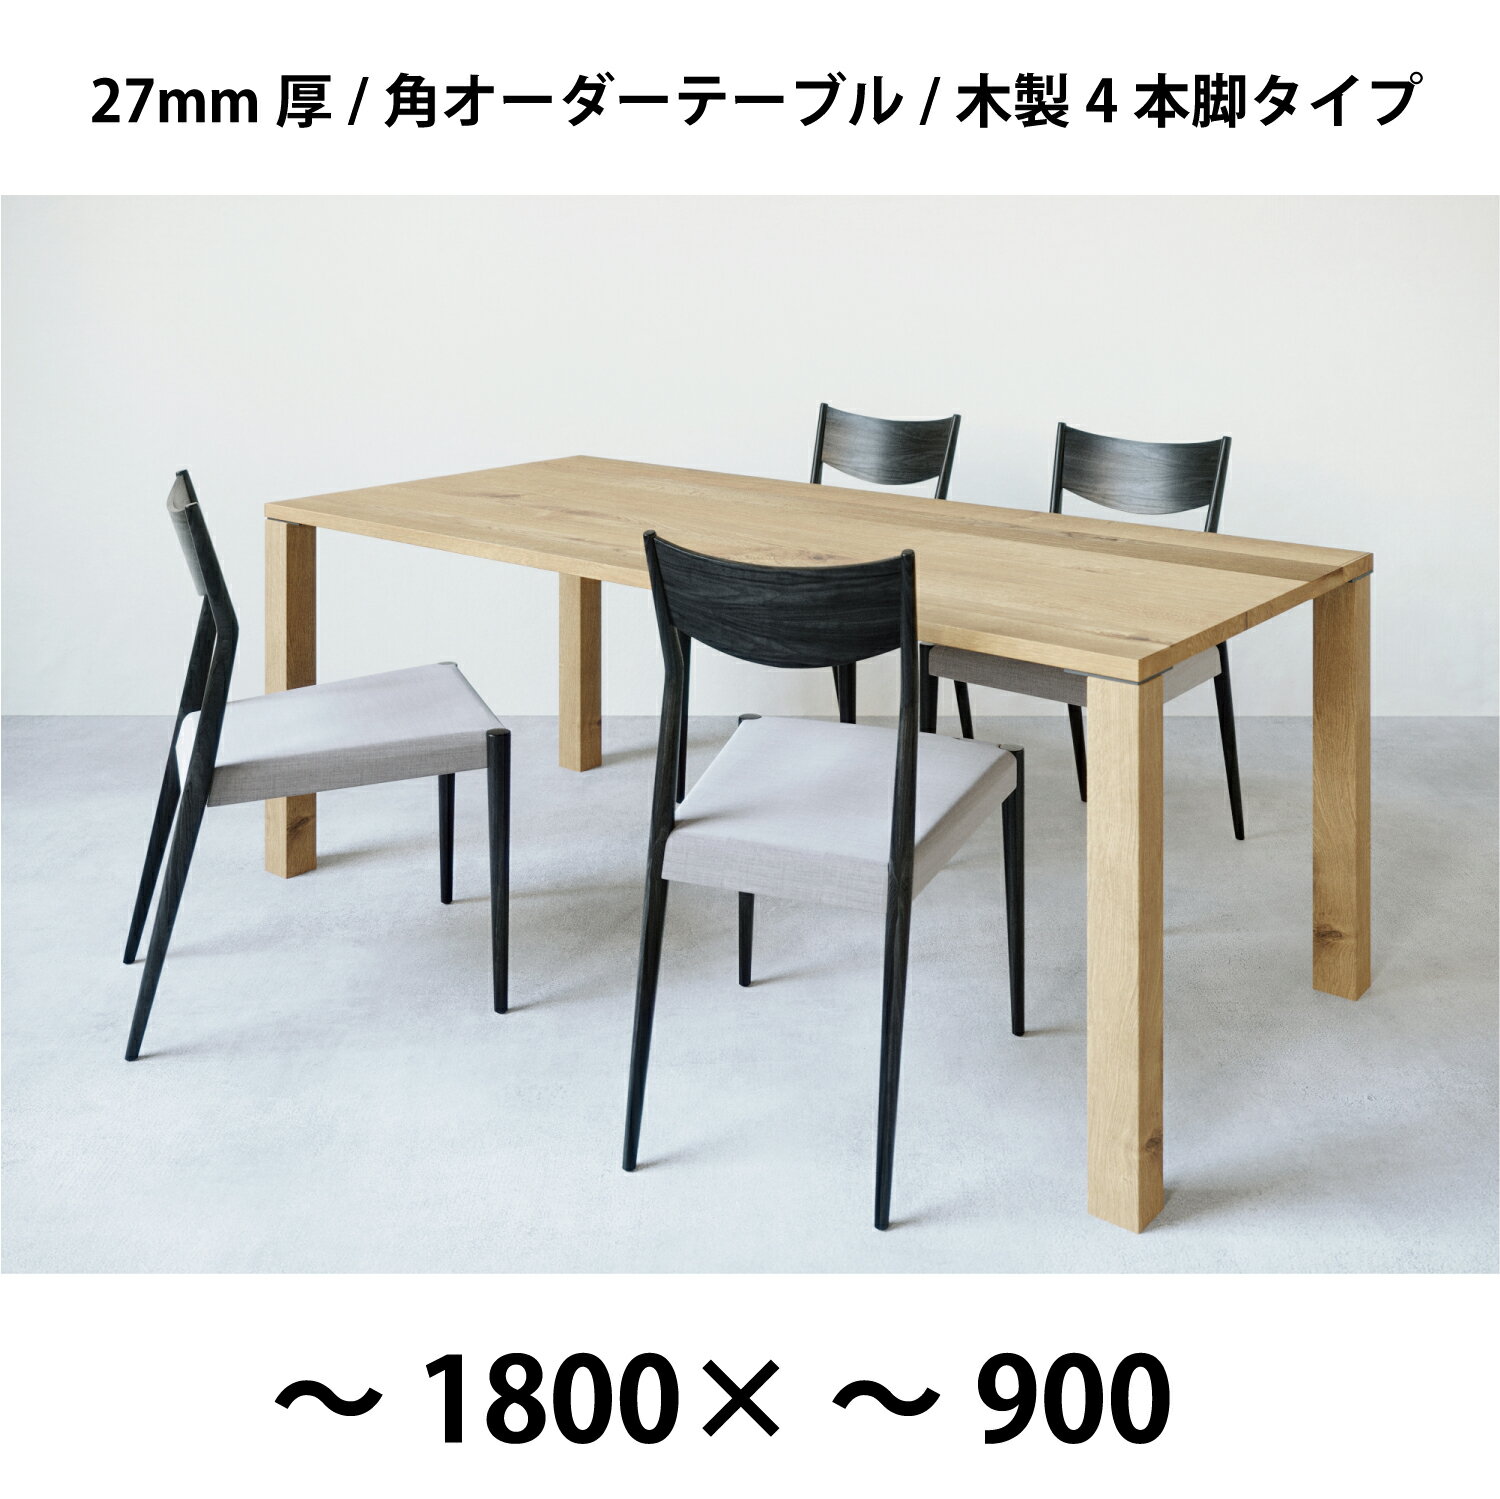 幅〜1800×奥行〜900+木製4本脚 3樹種が選べる50mm単位のフルオーダーテーブル